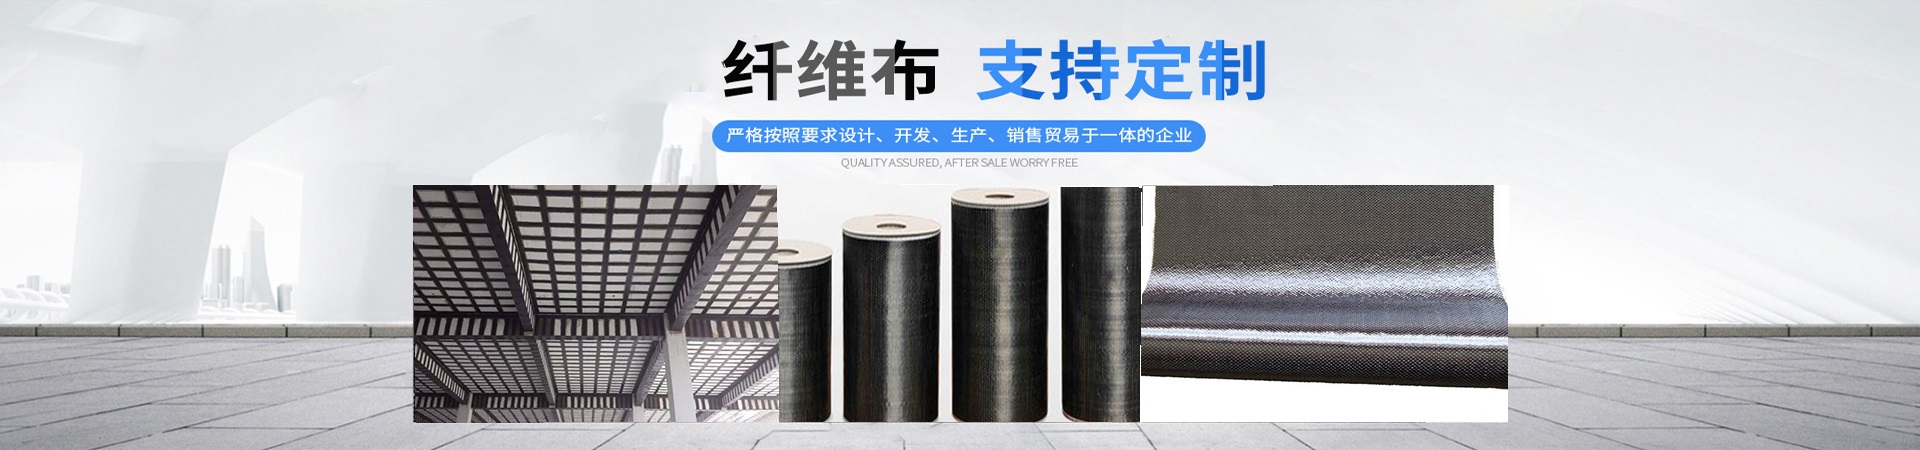 碳纤维布生产厂家、邯郸本地碳纤维布生产厂家、邯郸、邯郸碳纤维布生产厂家